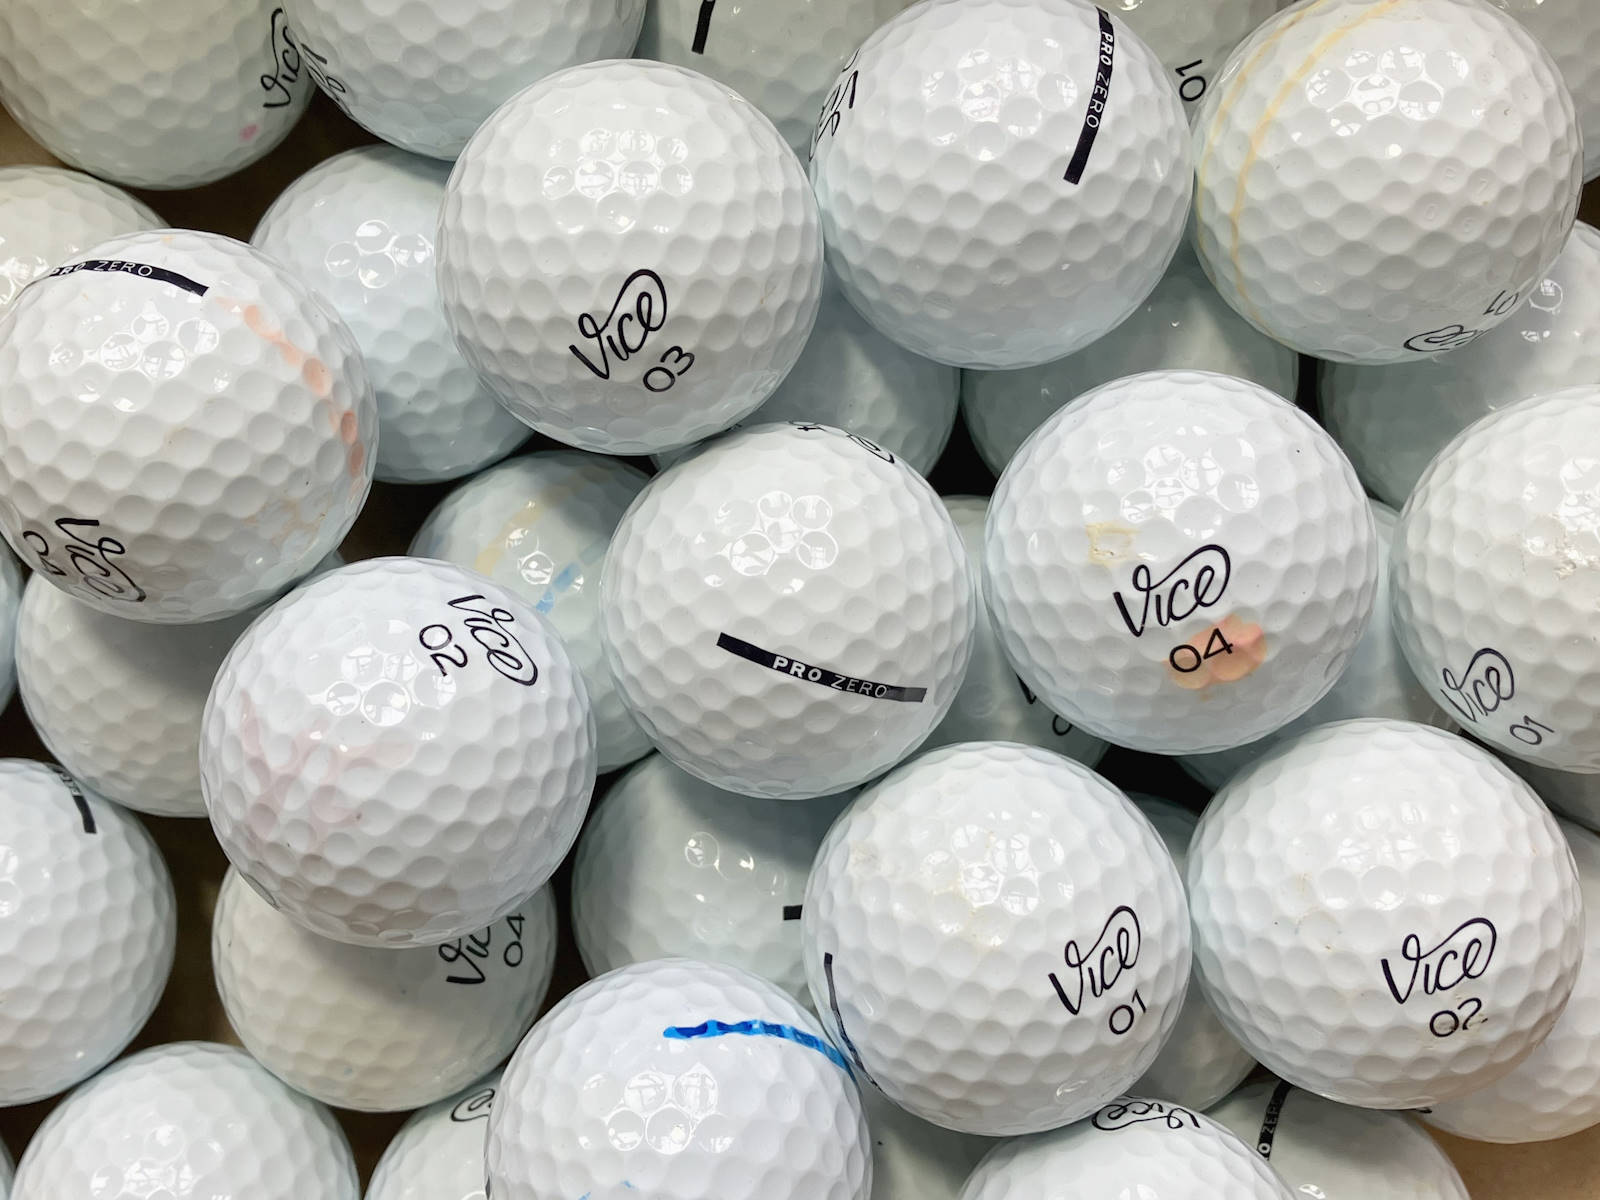 Vice Pro Zero Lakeballs - gebrauchte Pro Zero Golfbälle AA/AAA-Qualität